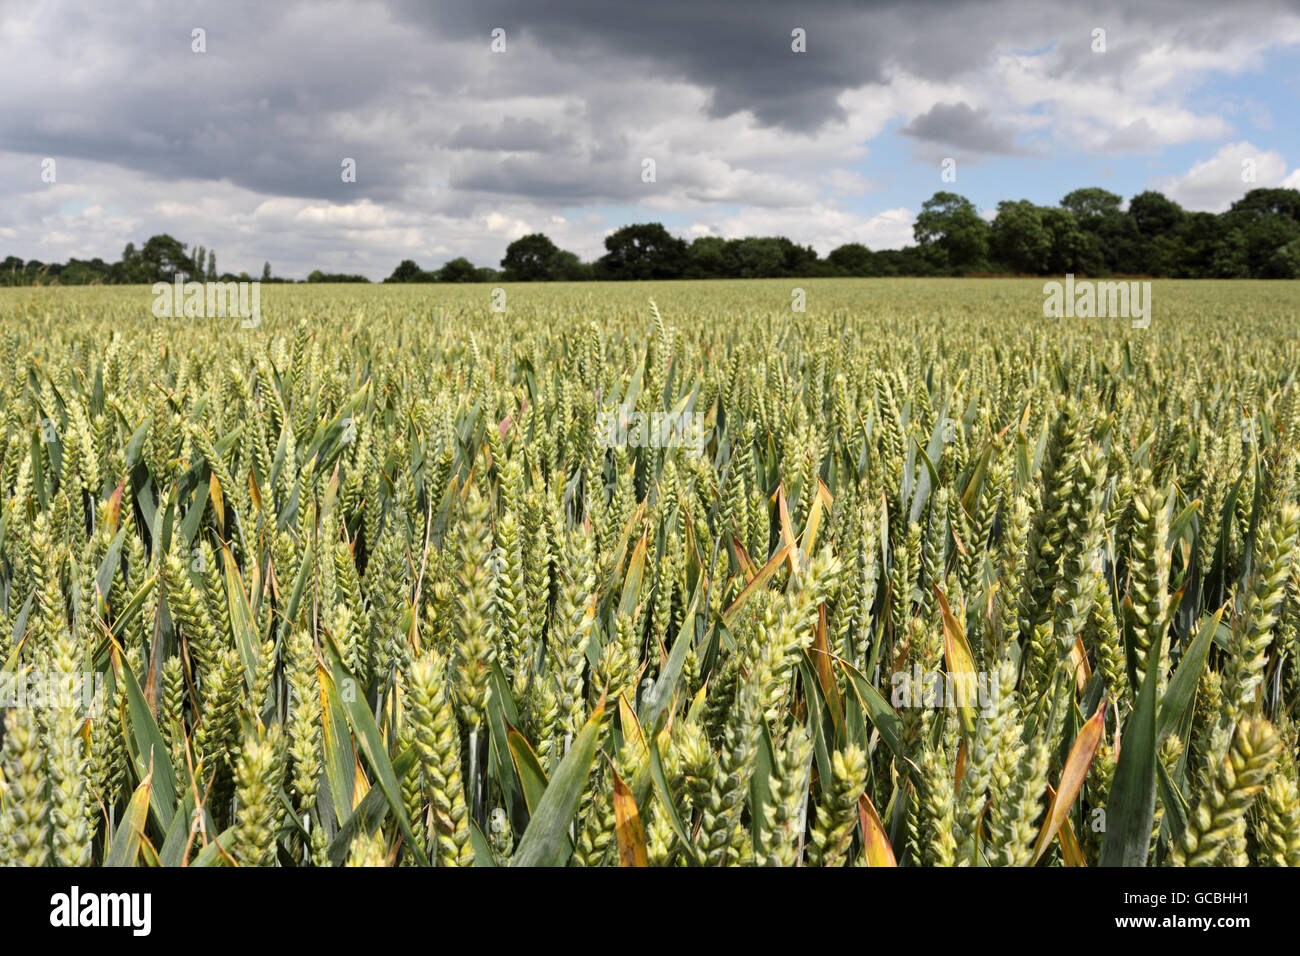 Rushett Farm wheat field in Surrey countryside at Malden Rushett, England, UK. Stock Photo